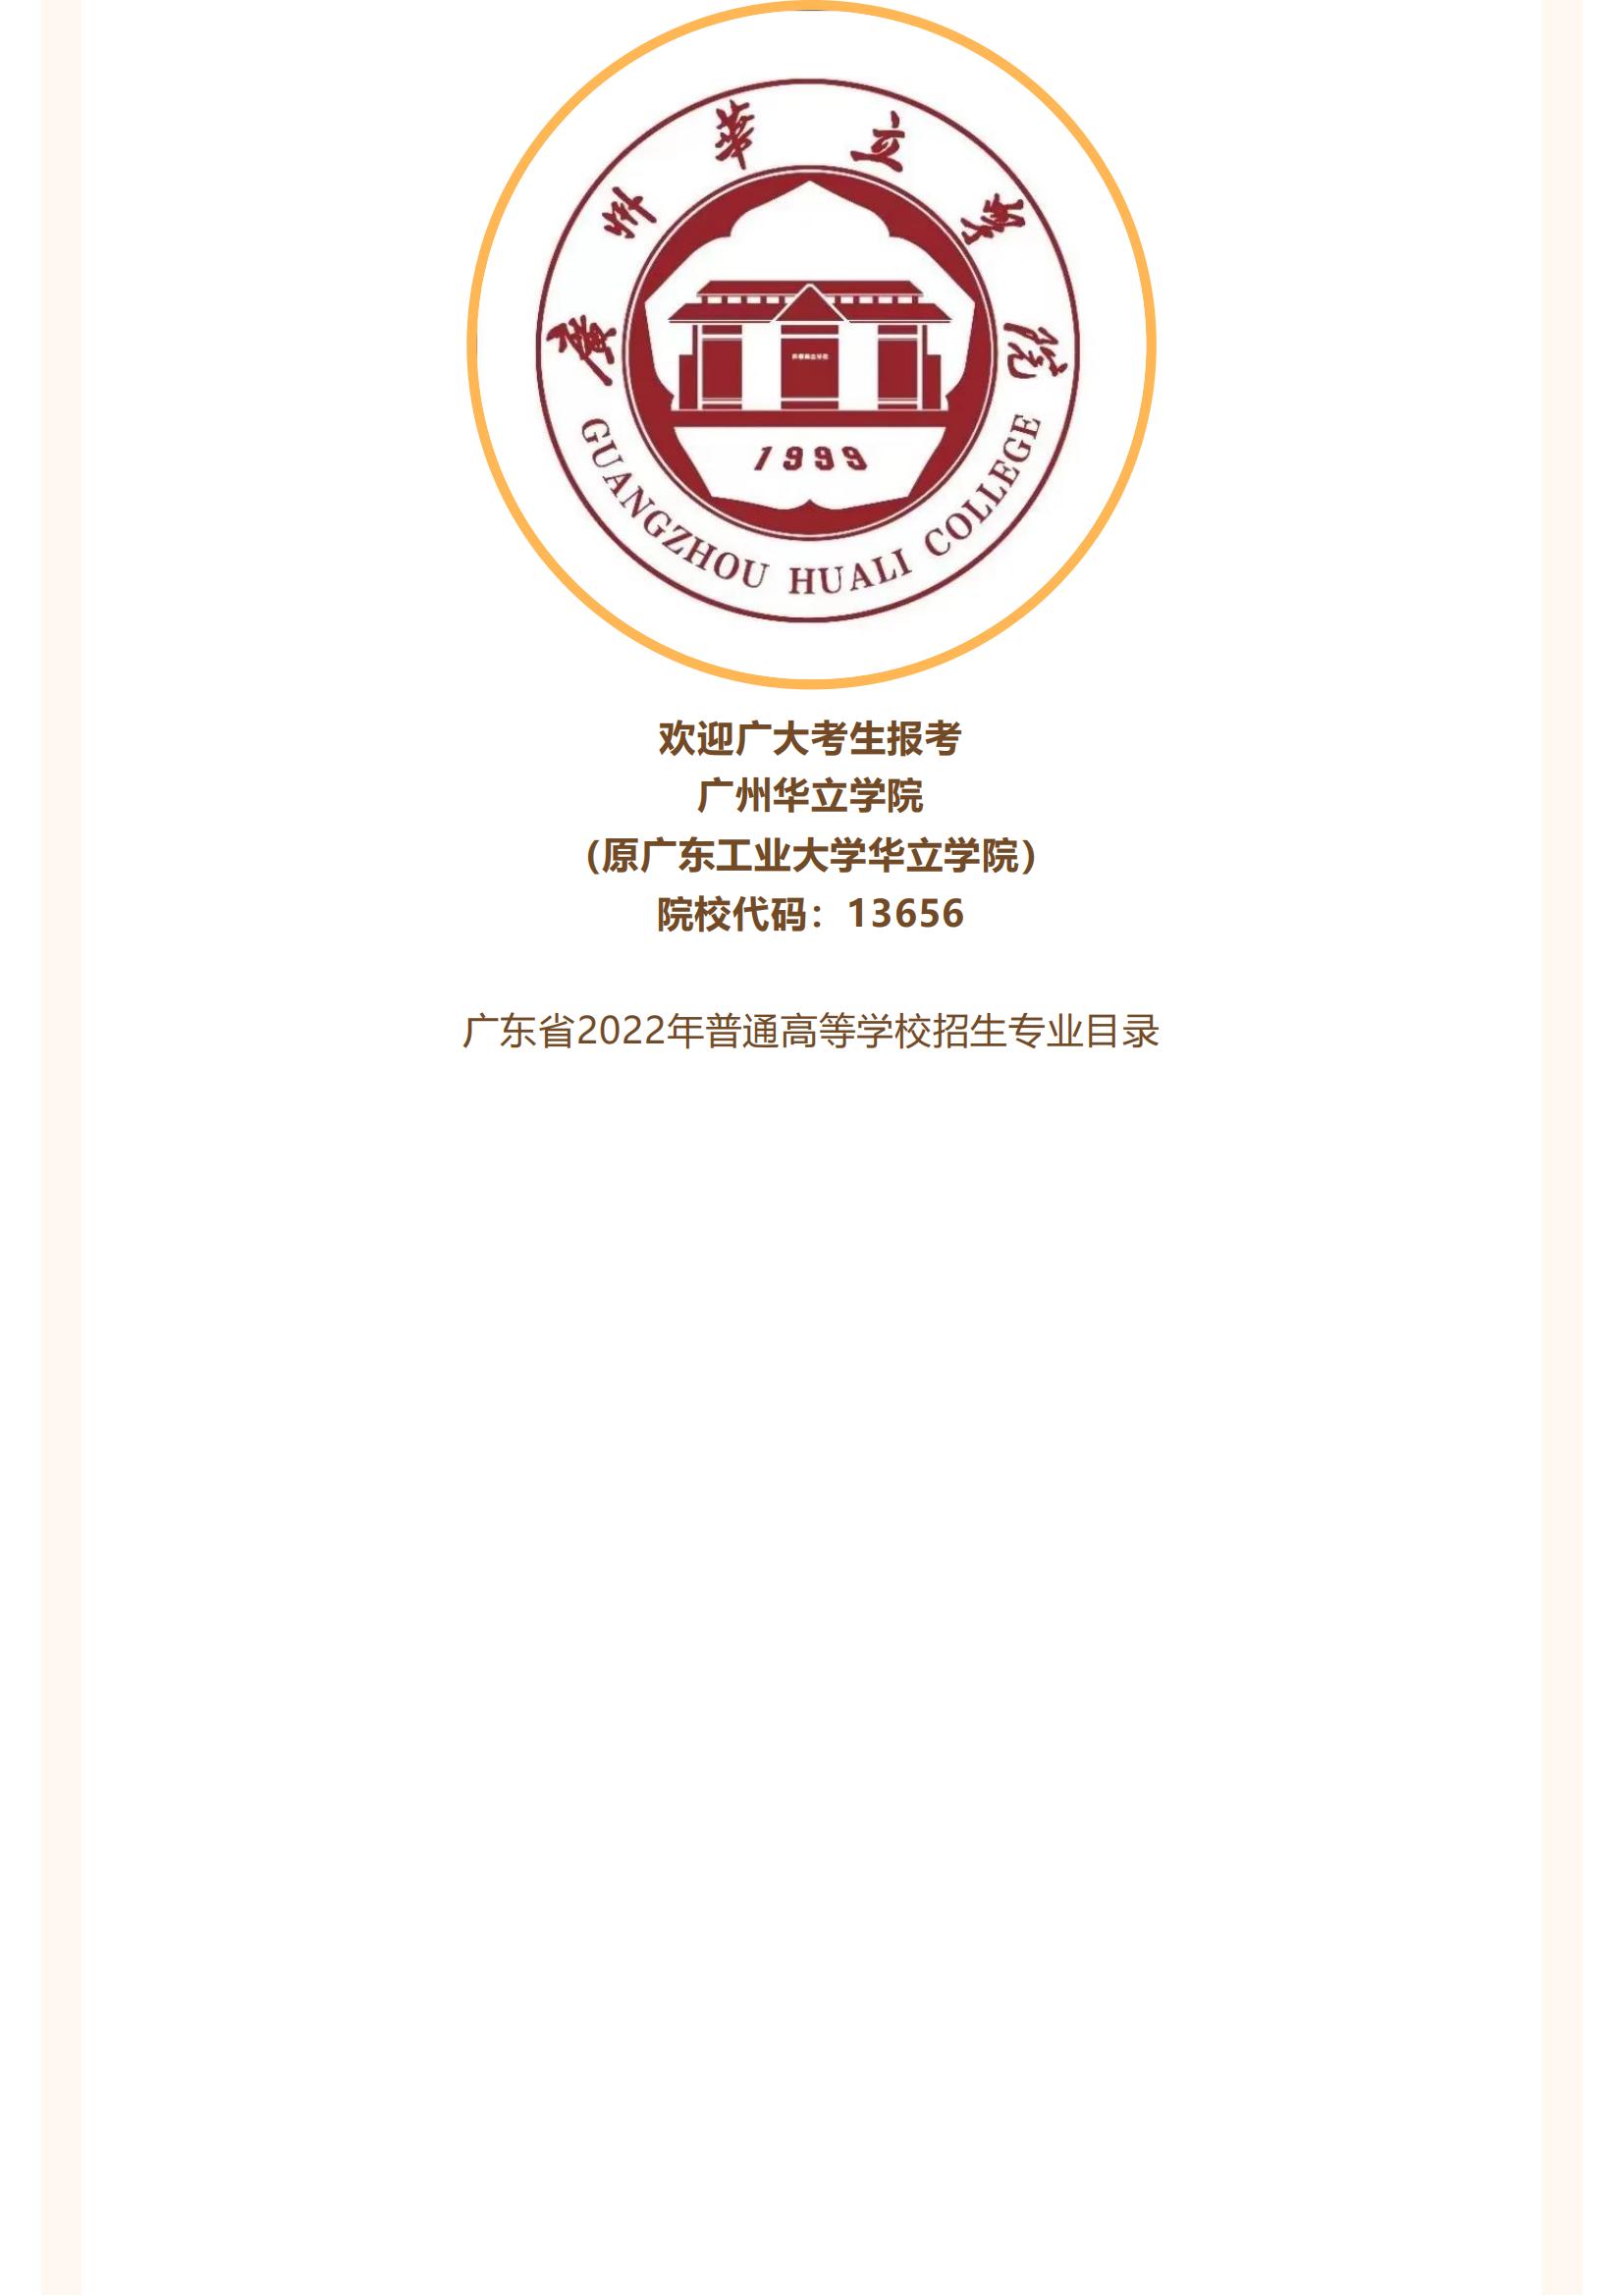 广州华立学院（原广东工业大学华立学院）2022年高考志愿填报指南_05.jpg